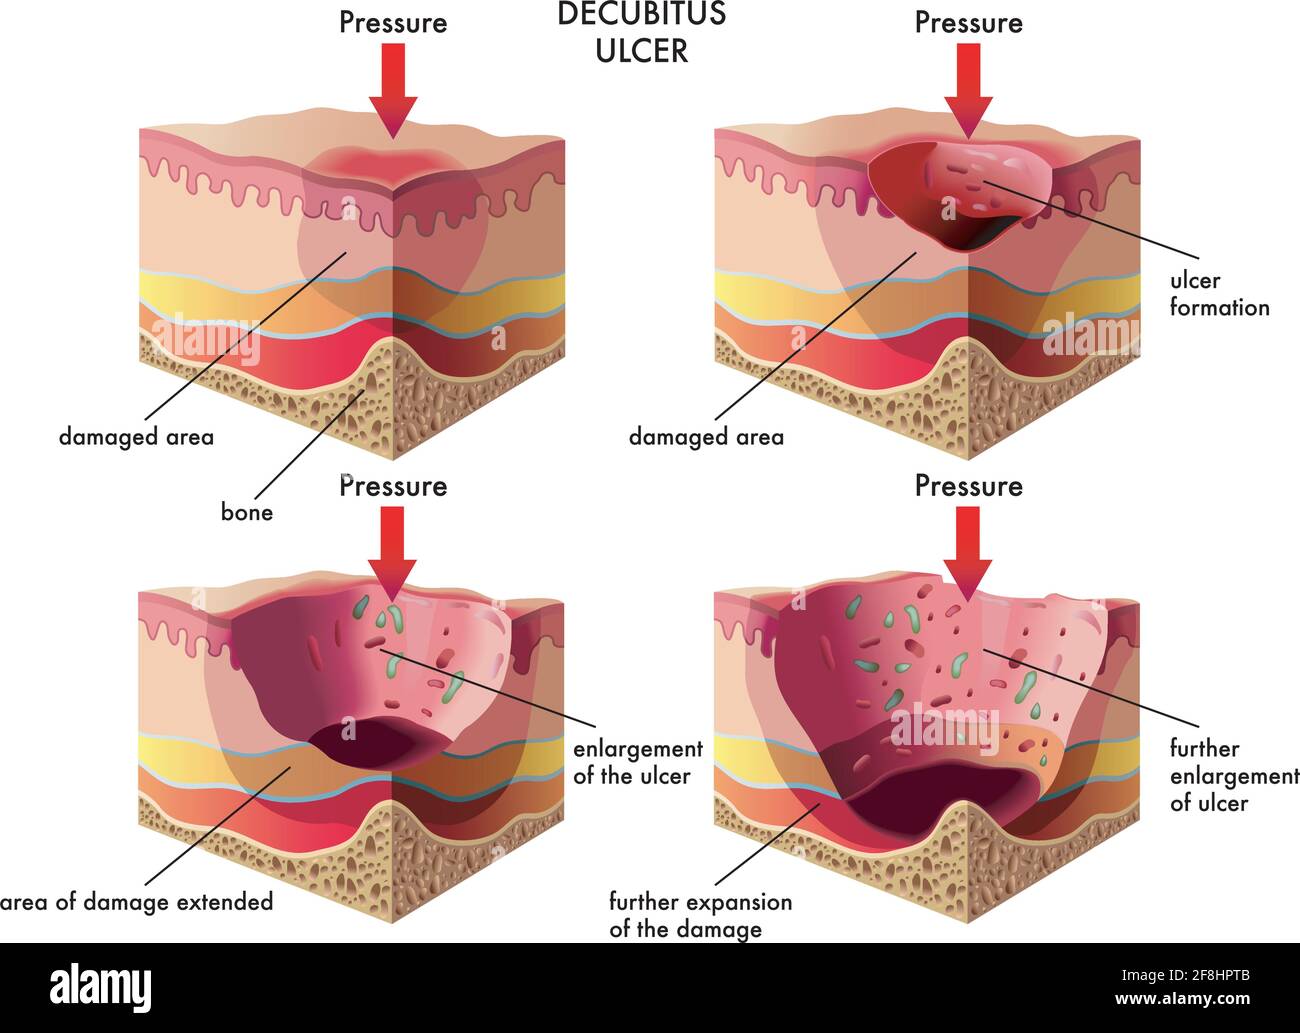 Illustrazione medica degli stadi dell'ulcera decubito, con annotazioni. Illustrazione Vettoriale